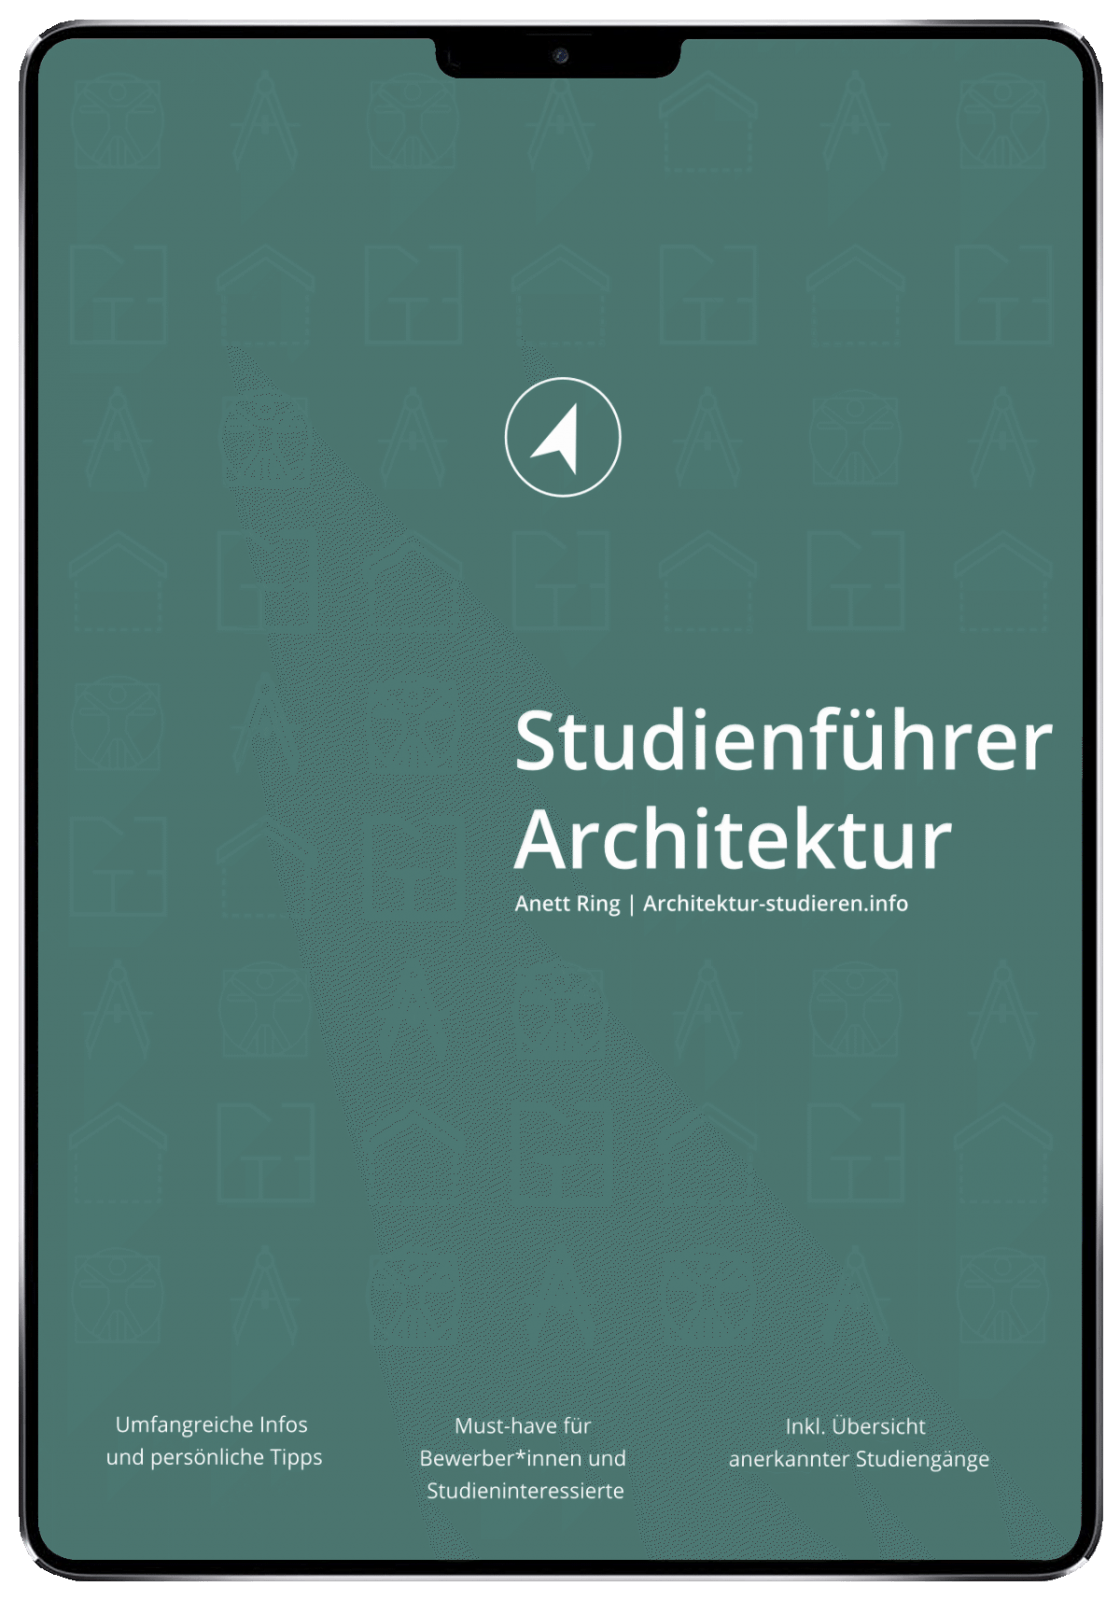 E-Book "Studienführer Architektur" für Studieninteressierte und Bewerber*innen für Architekturstudium | © Anett Ring, Architektur-studieren.info